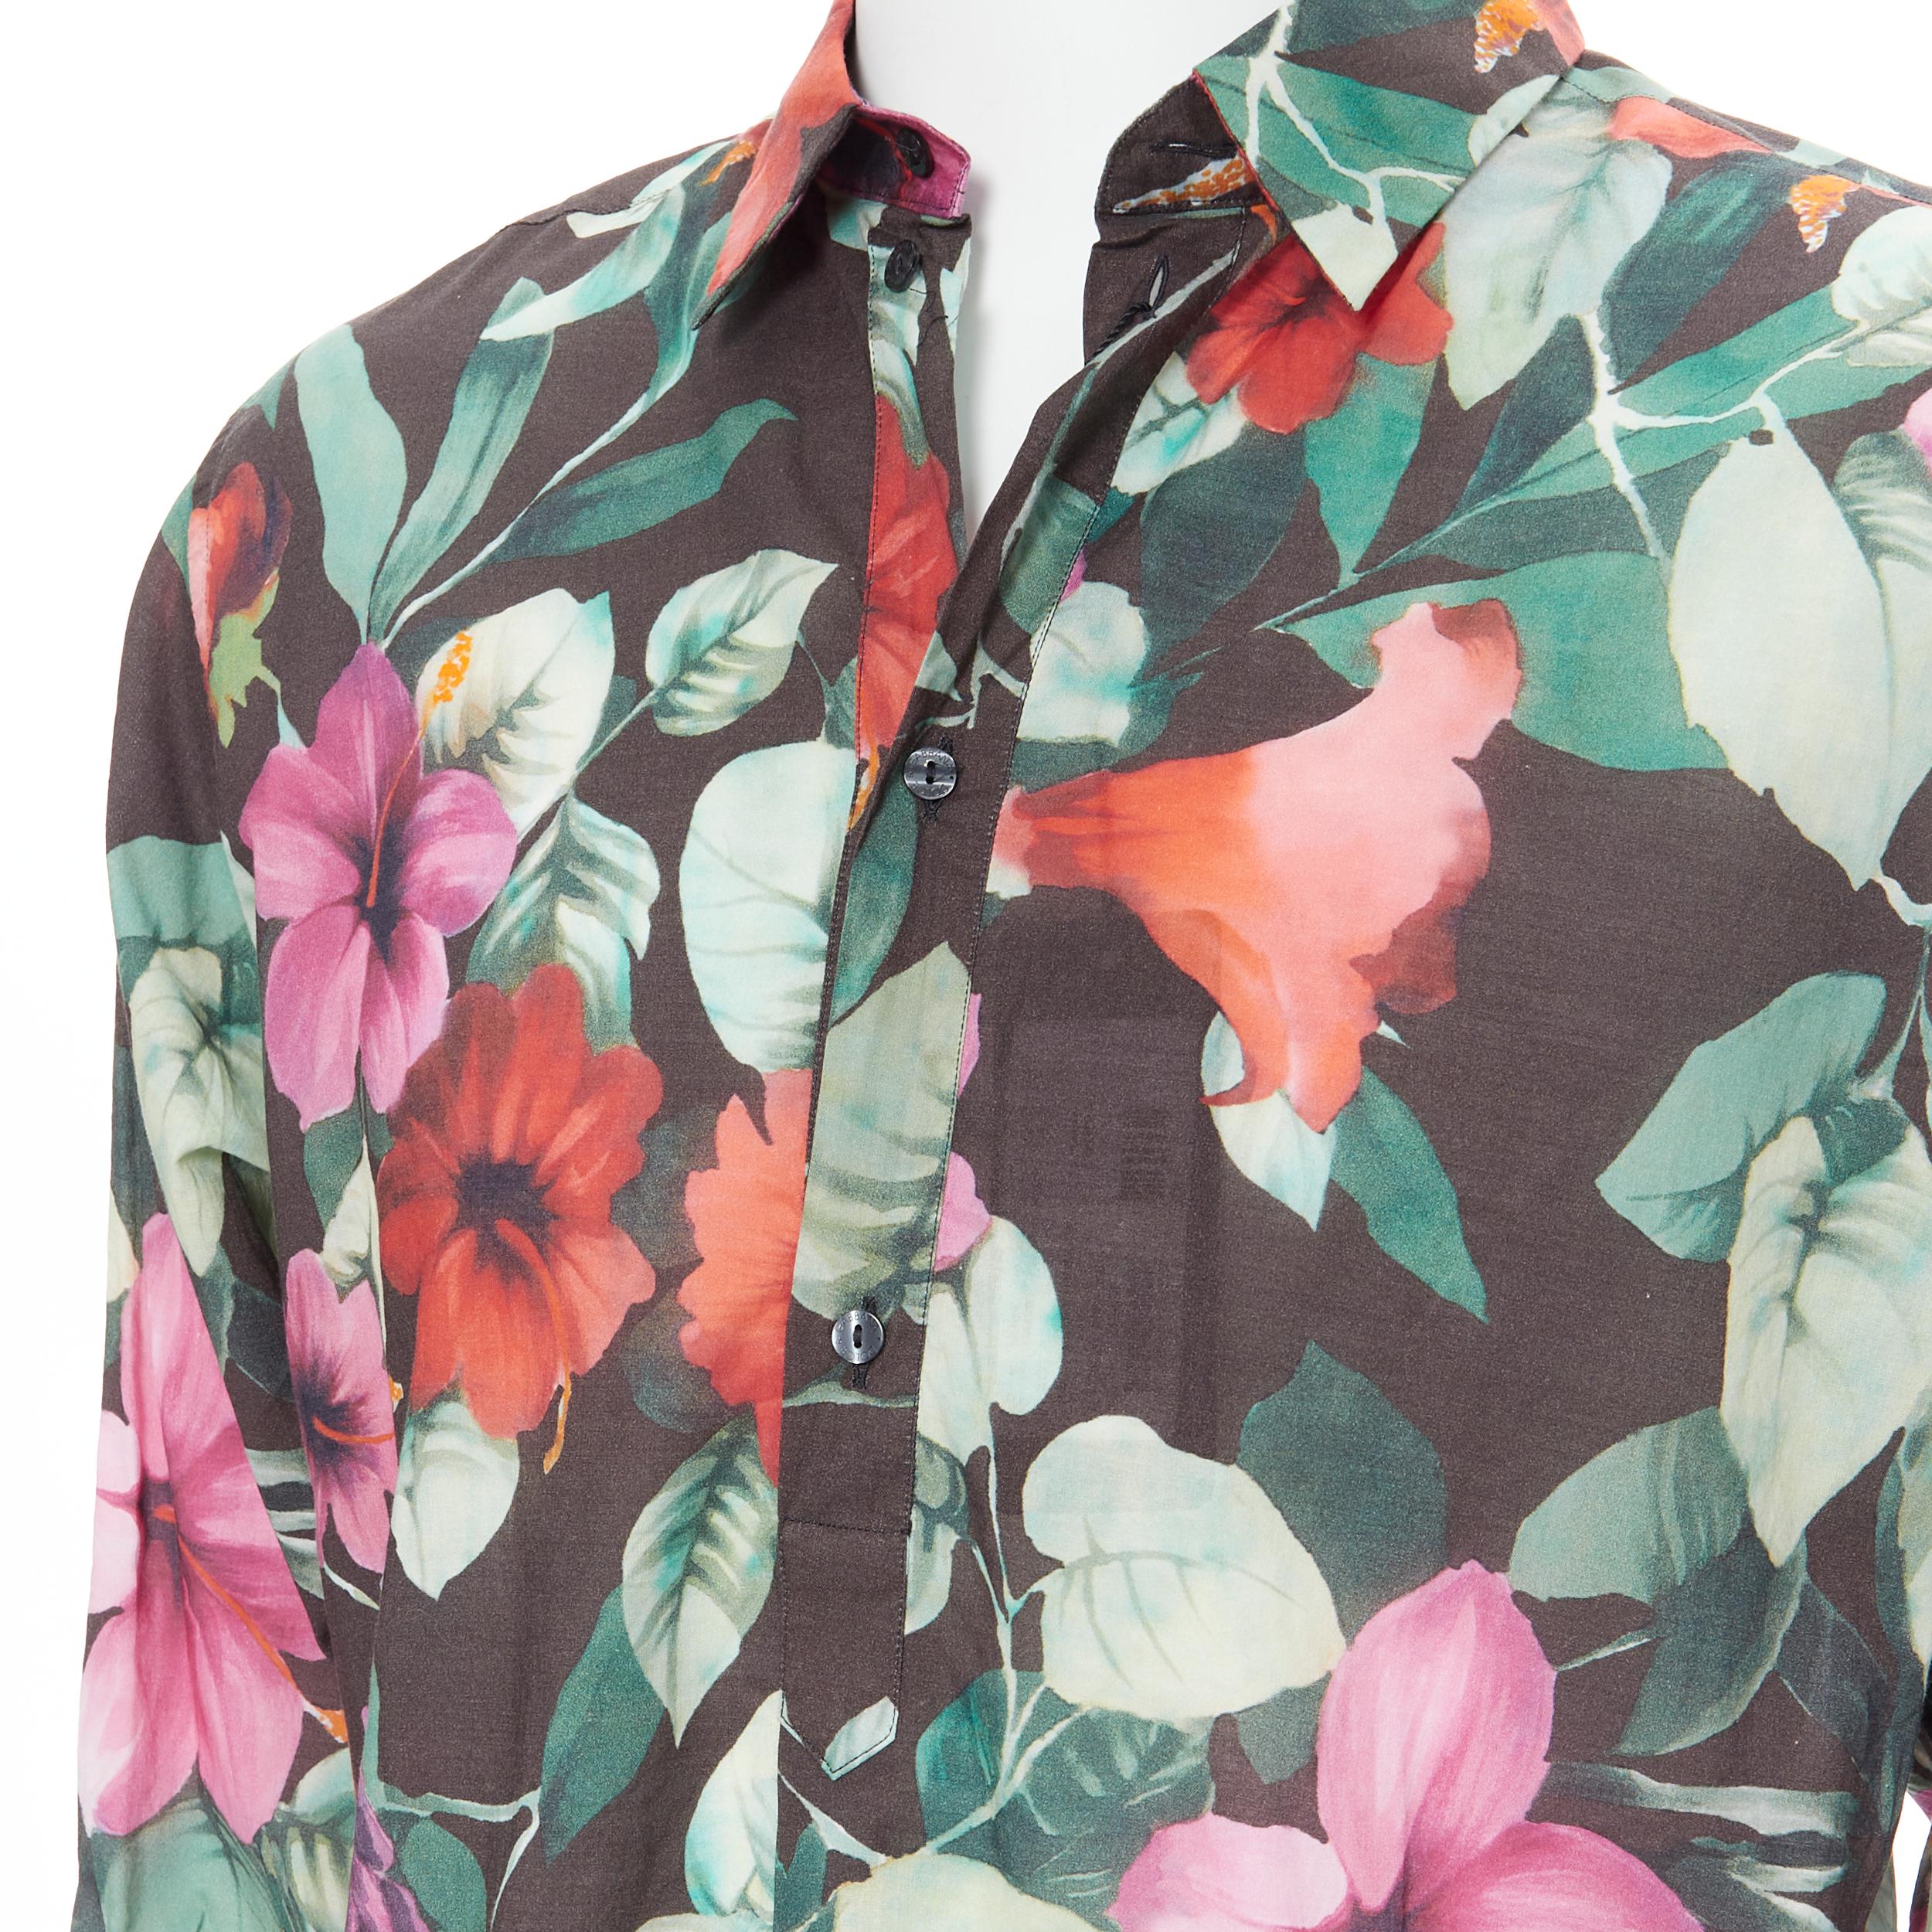 nouveau DOLCE GABBANA chemise décontractée à manches longues en coton à imprimé floral hawaïen EU38 S 
Référence : TGAS/B01084 
Marque : Dolce Gabbana 
Matériau : Coton 
Couleur : Multicolore 
Motif : Floral 
Fermeture : bouton 
Détail